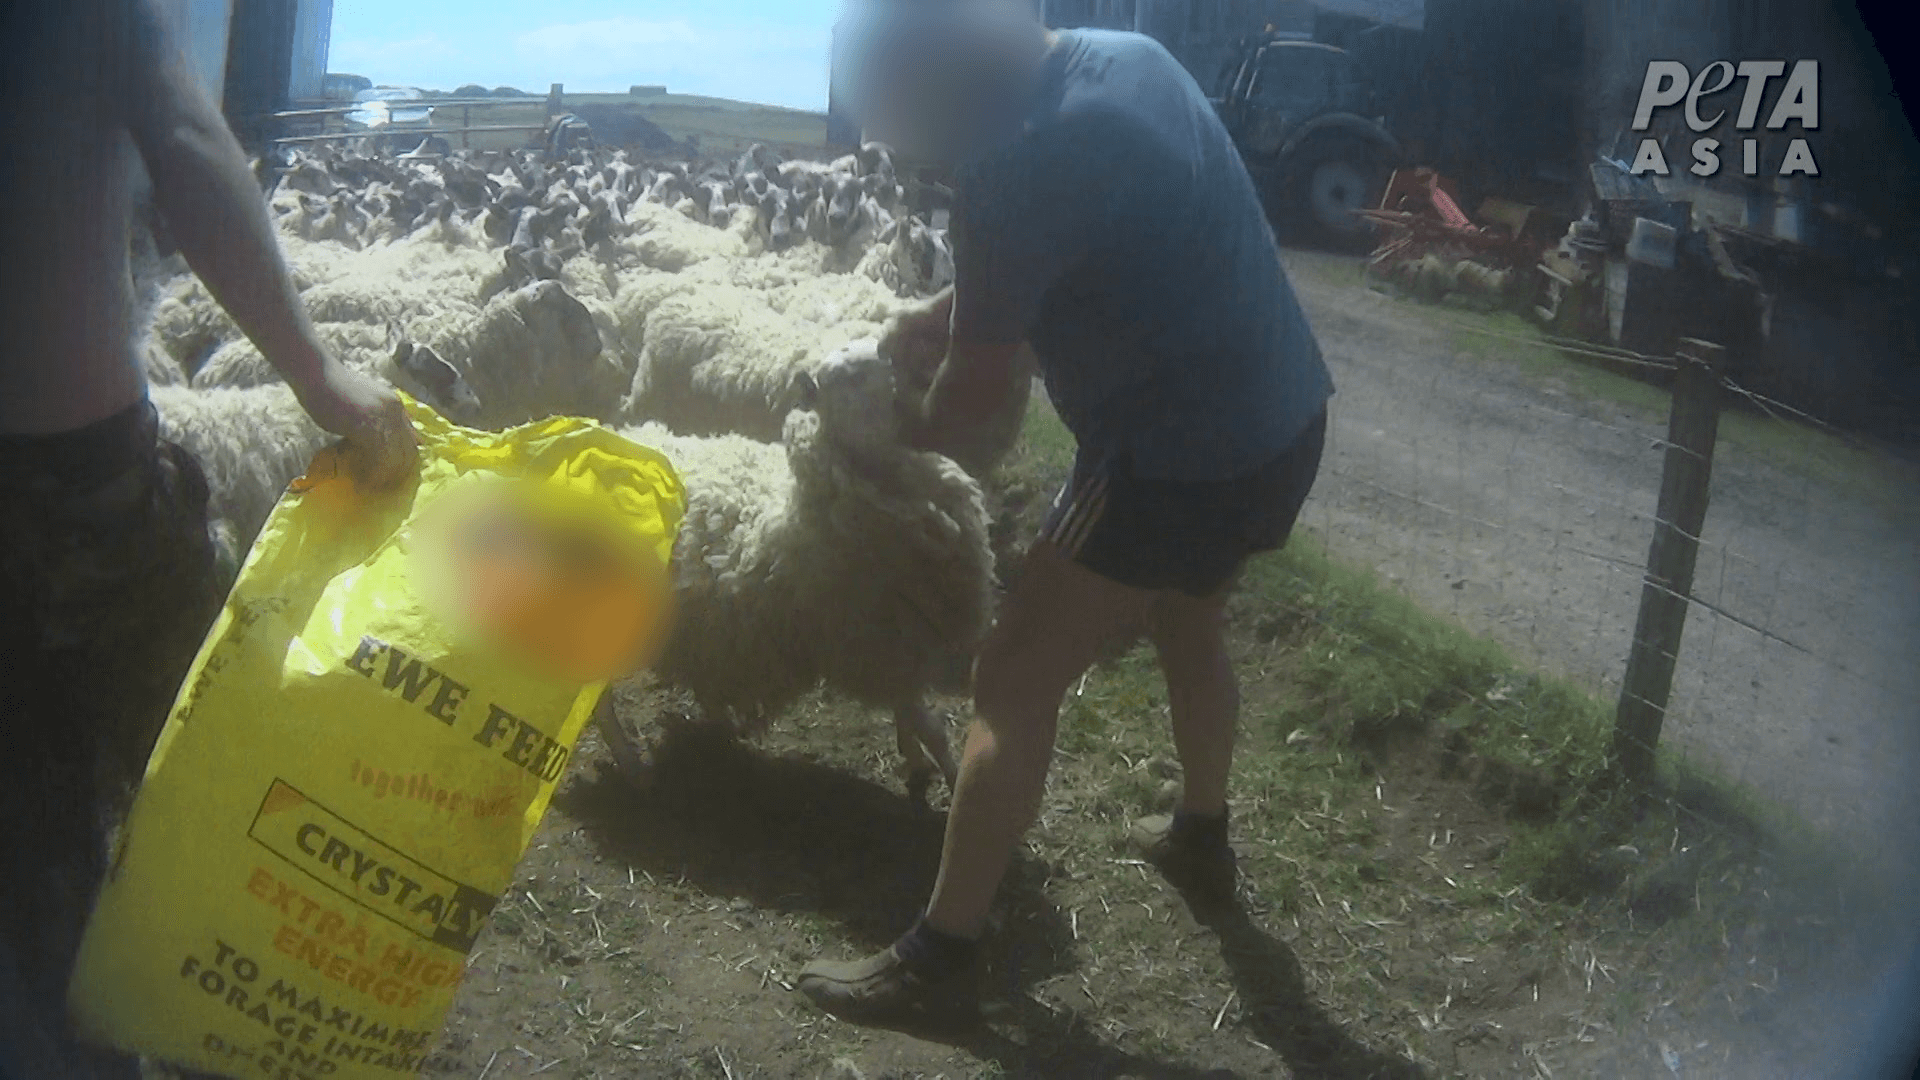 Un éleveur de moutons écossais plaide coupable après avoir été filmé en train de frapper des moutons au visage